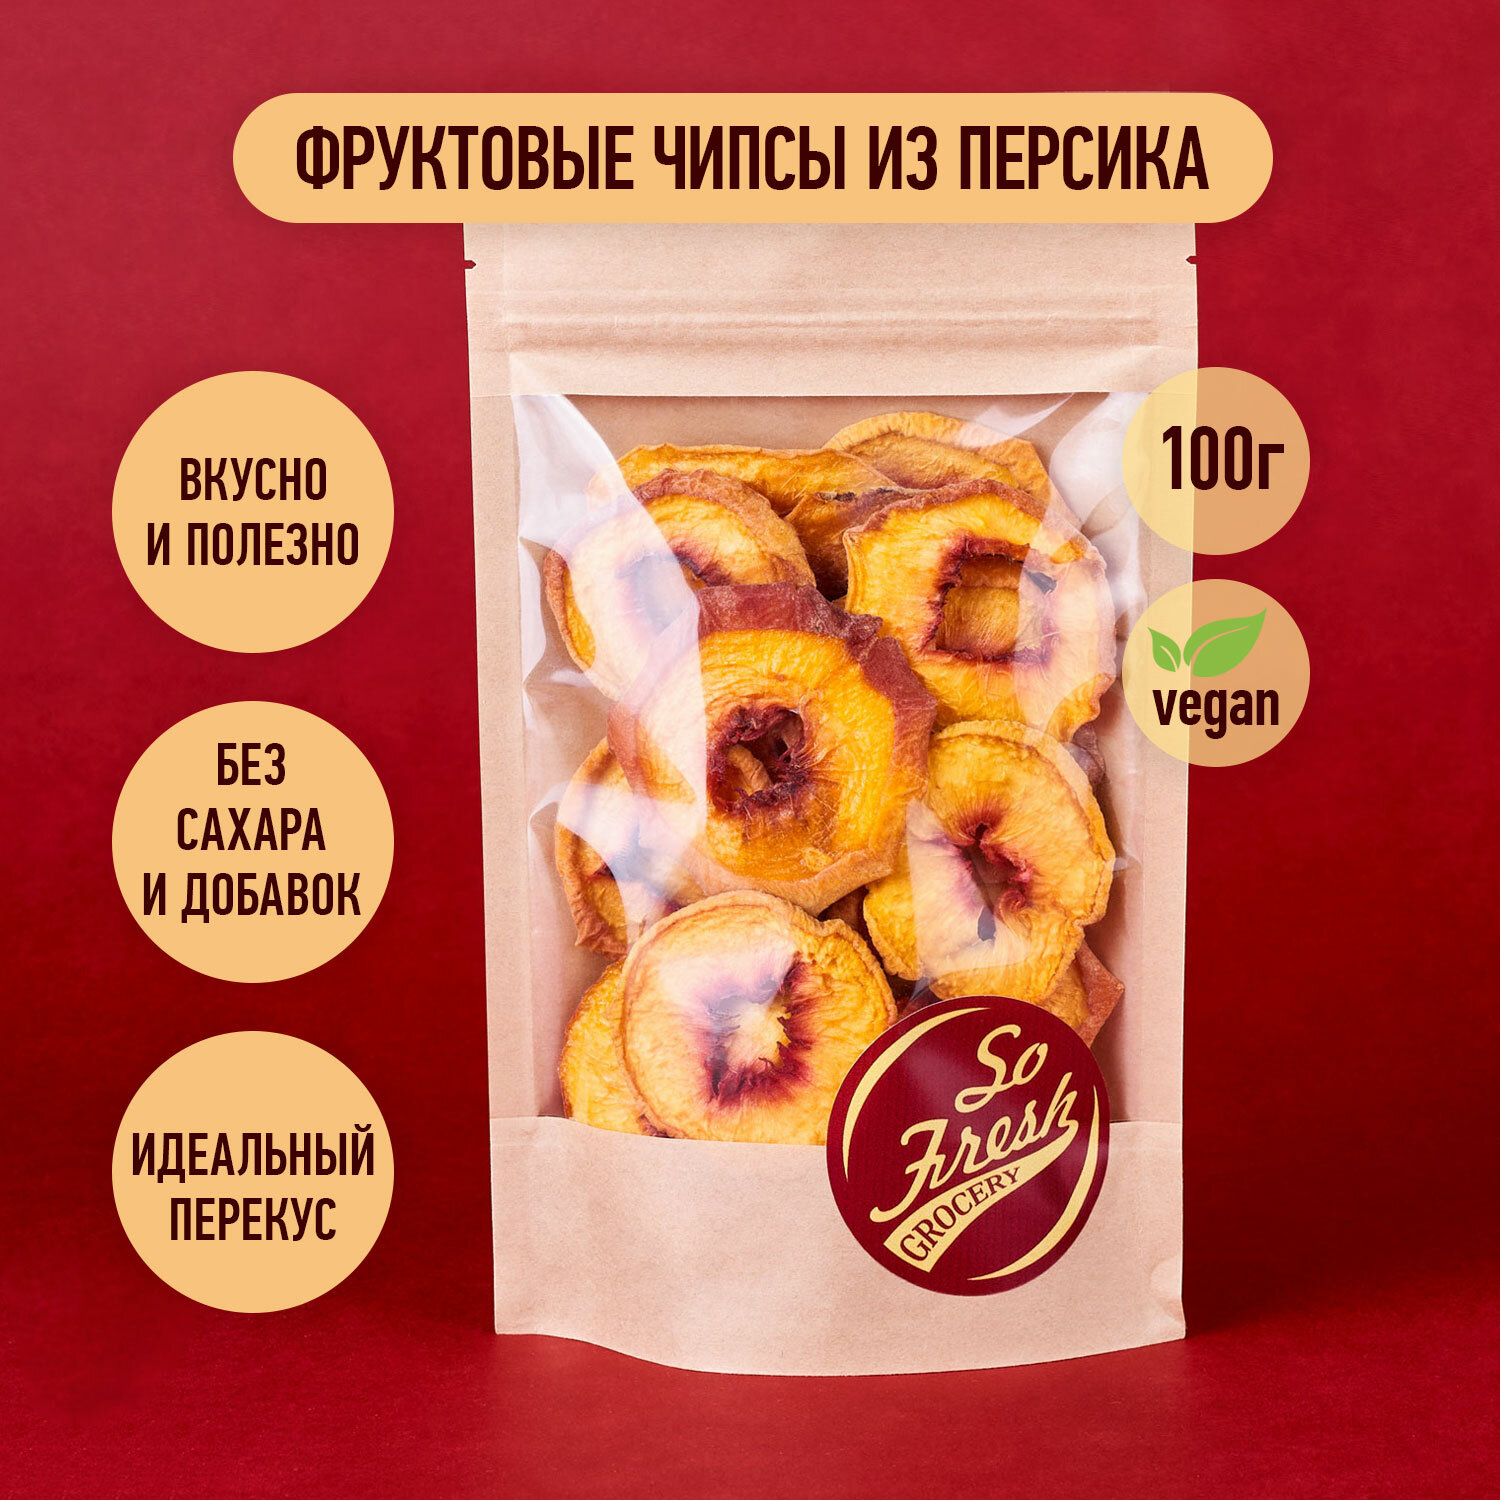 Фруктовые чипсы/ фрипсы/ сухофрукты So Fresh grocery персик сушеный кольцами без сахара, Иран, 100 г.